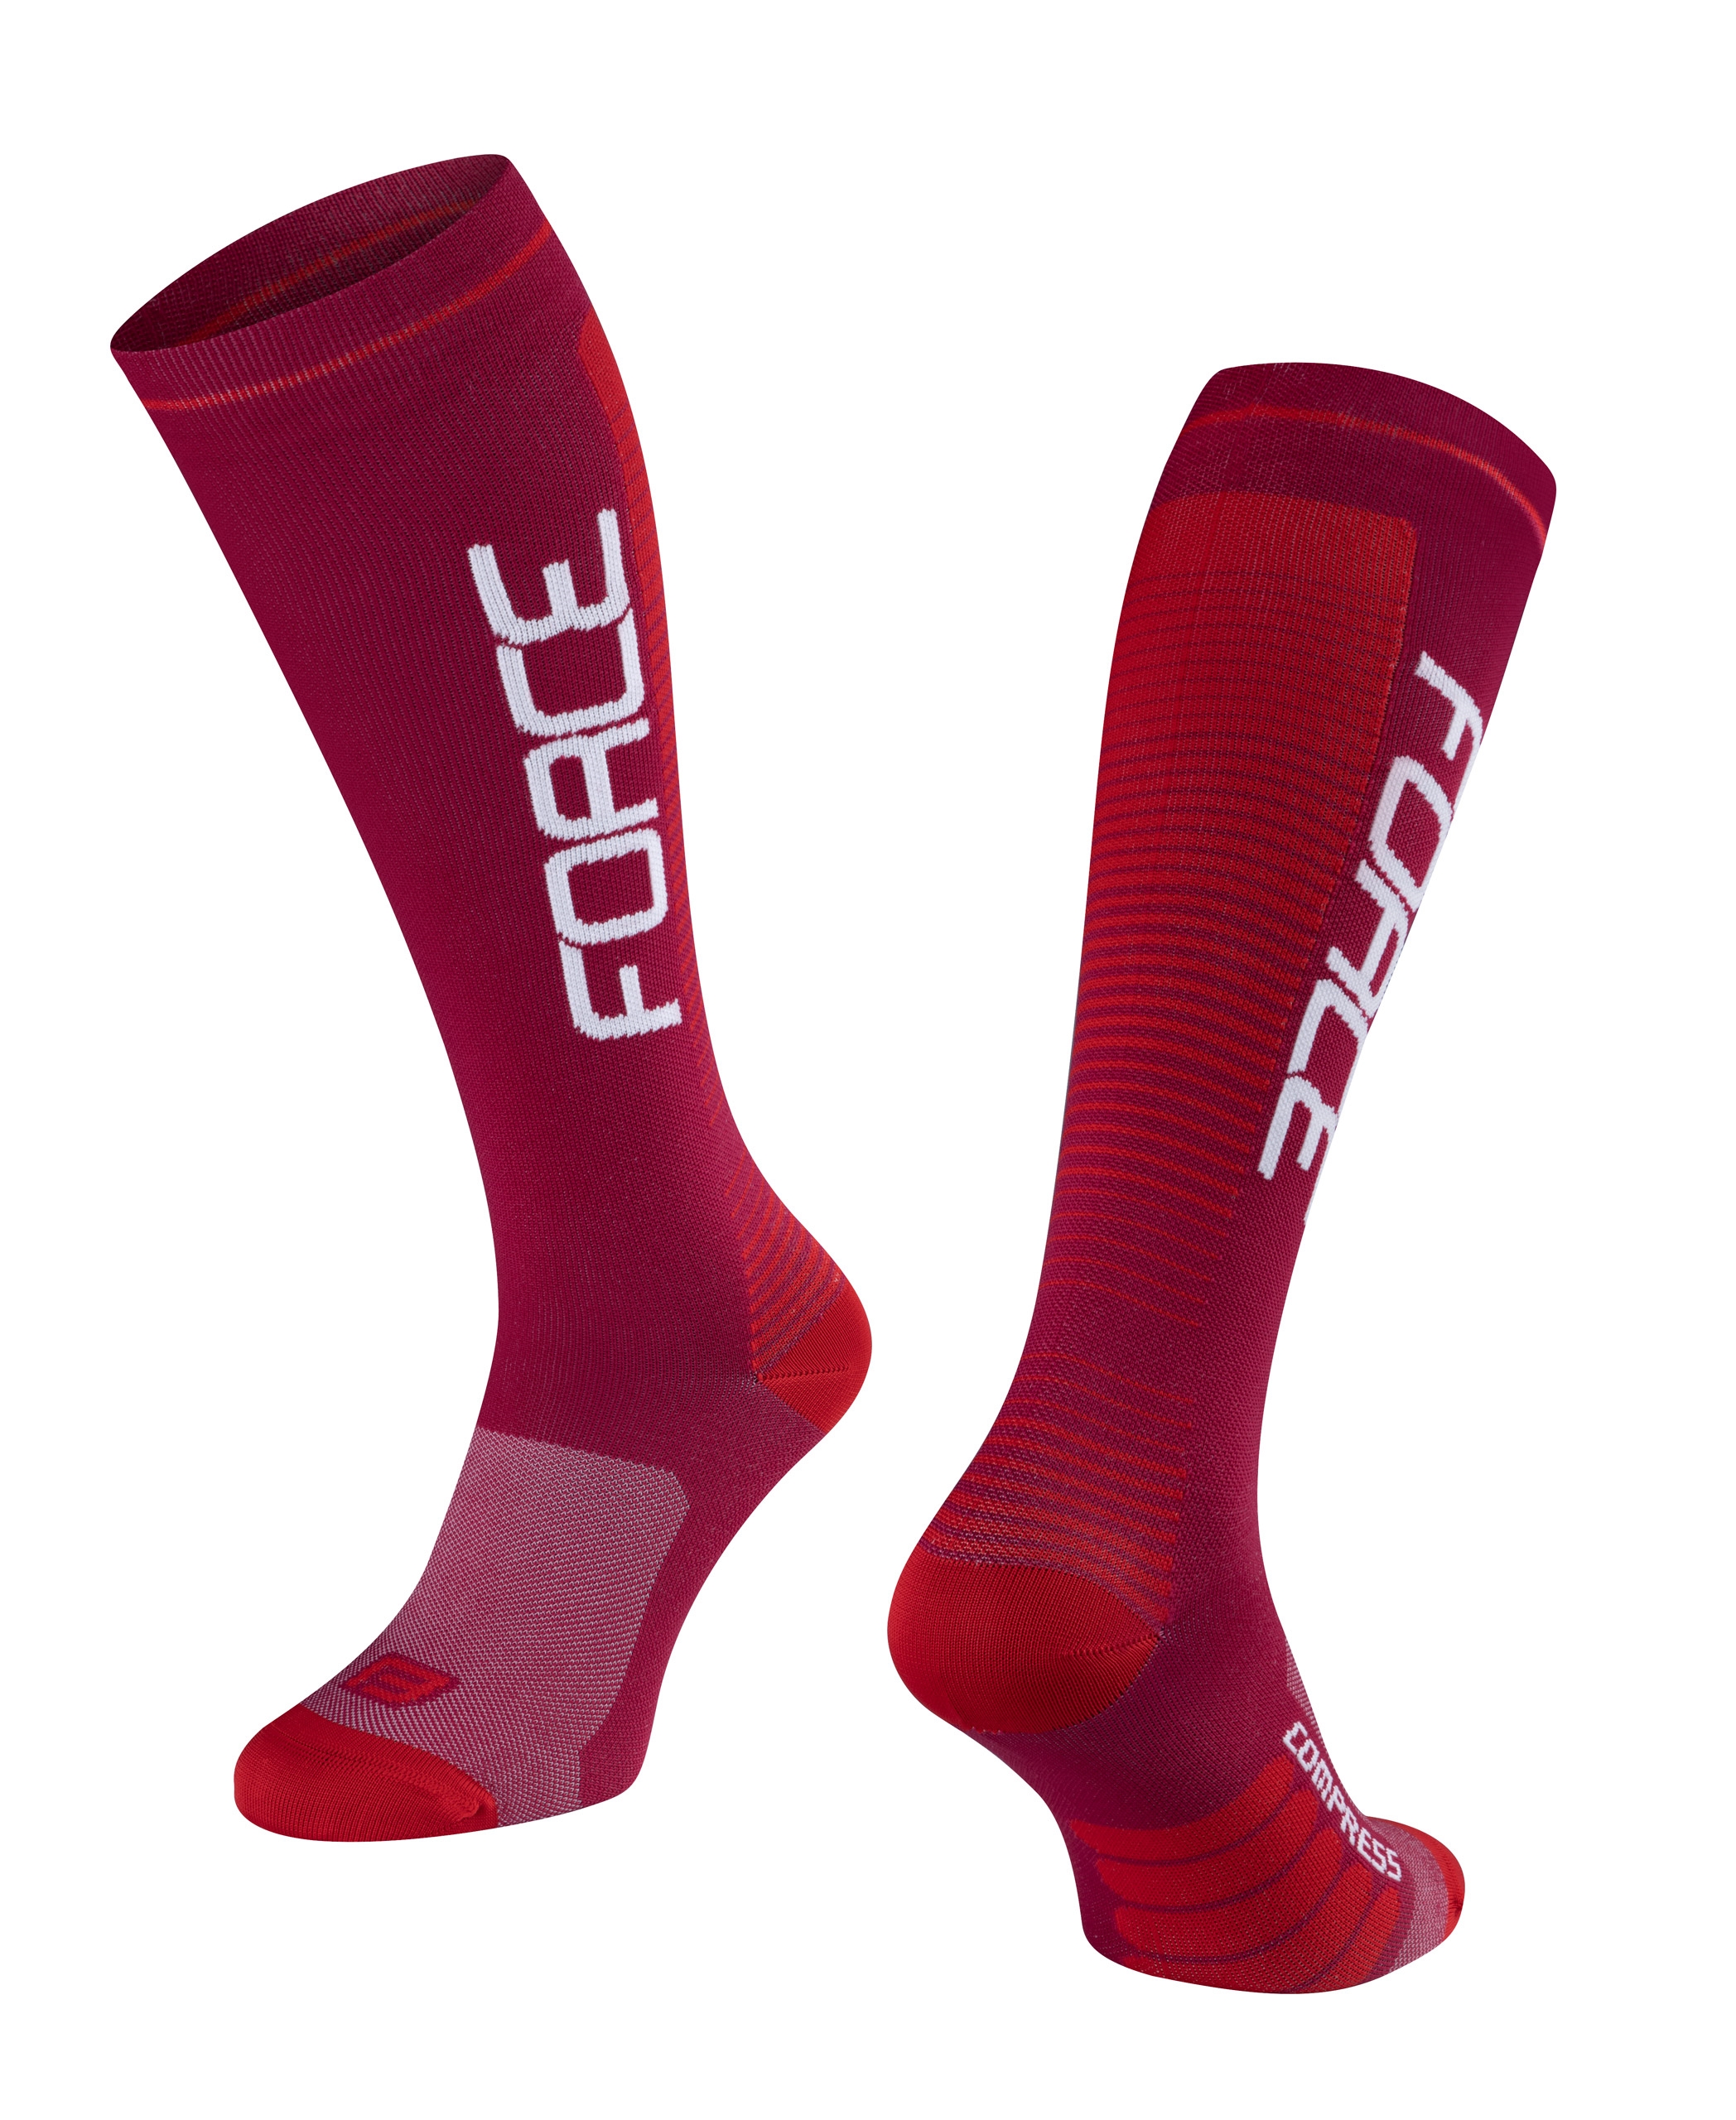 ponožky FORCE COMPRESS, bordó-červené L-XL/42-47